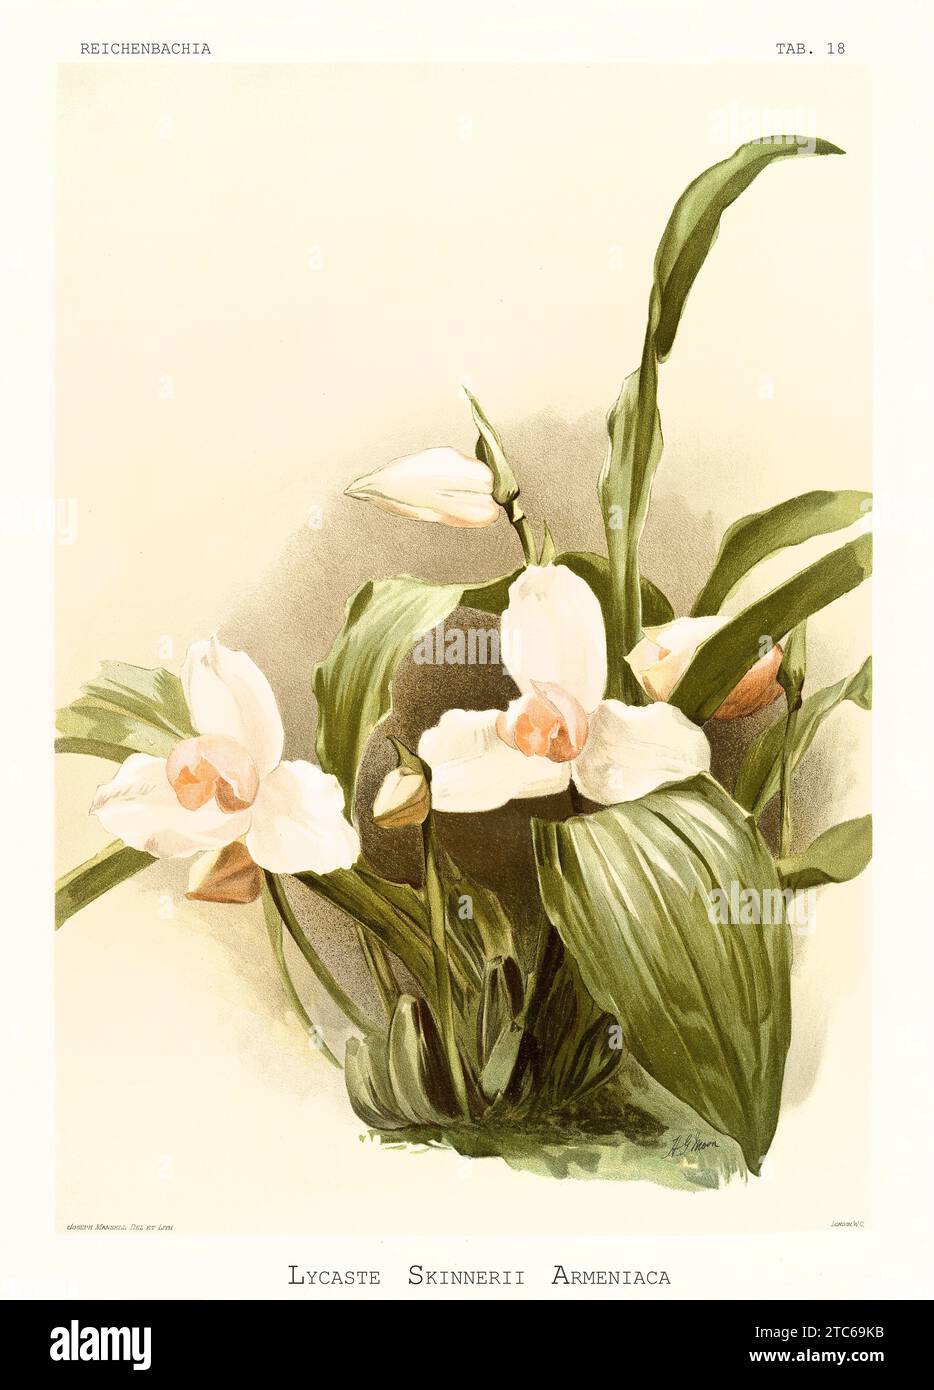 Vieille illustration de White Nun Orchid (Lycaste skinneri). Reichenbachia, de F. Sander. St. Albans, Royaume-Uni, 1888 - 1894 Banque D'Images